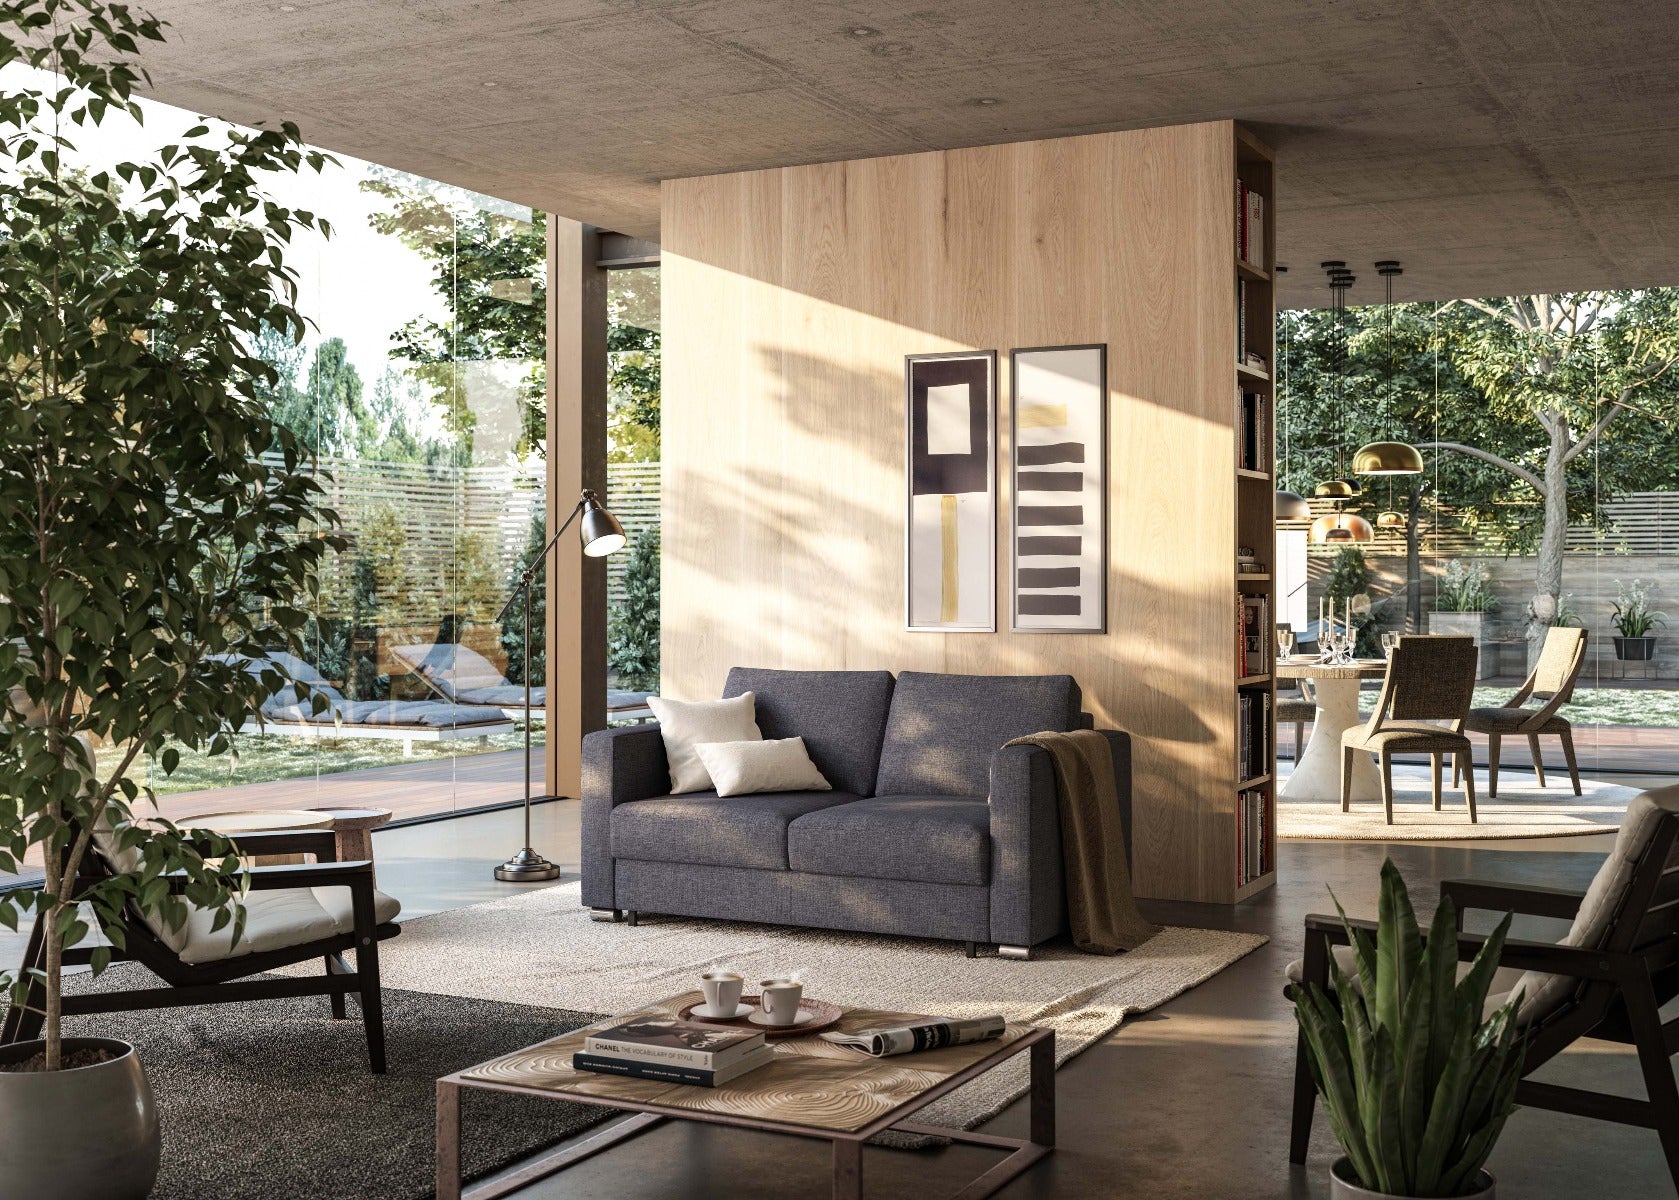 Luonto Furniture Fantasy Full XL Loveseat Sleeper - Rene 04 - 217/6 Chrome